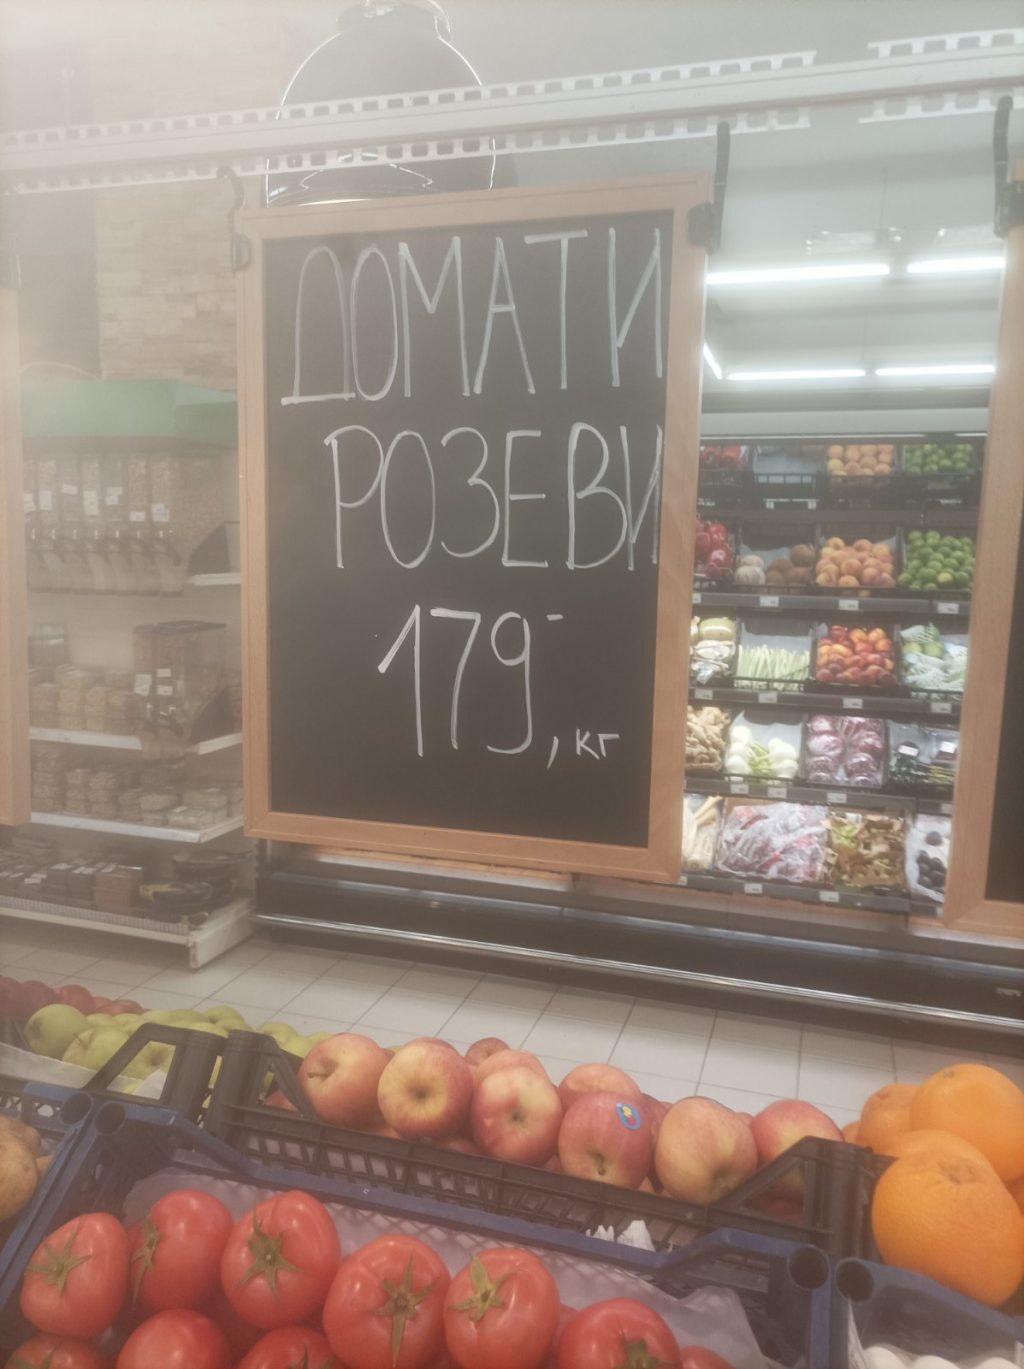 Ова е цена на домати од маркет во Скопје, а не во Шведска